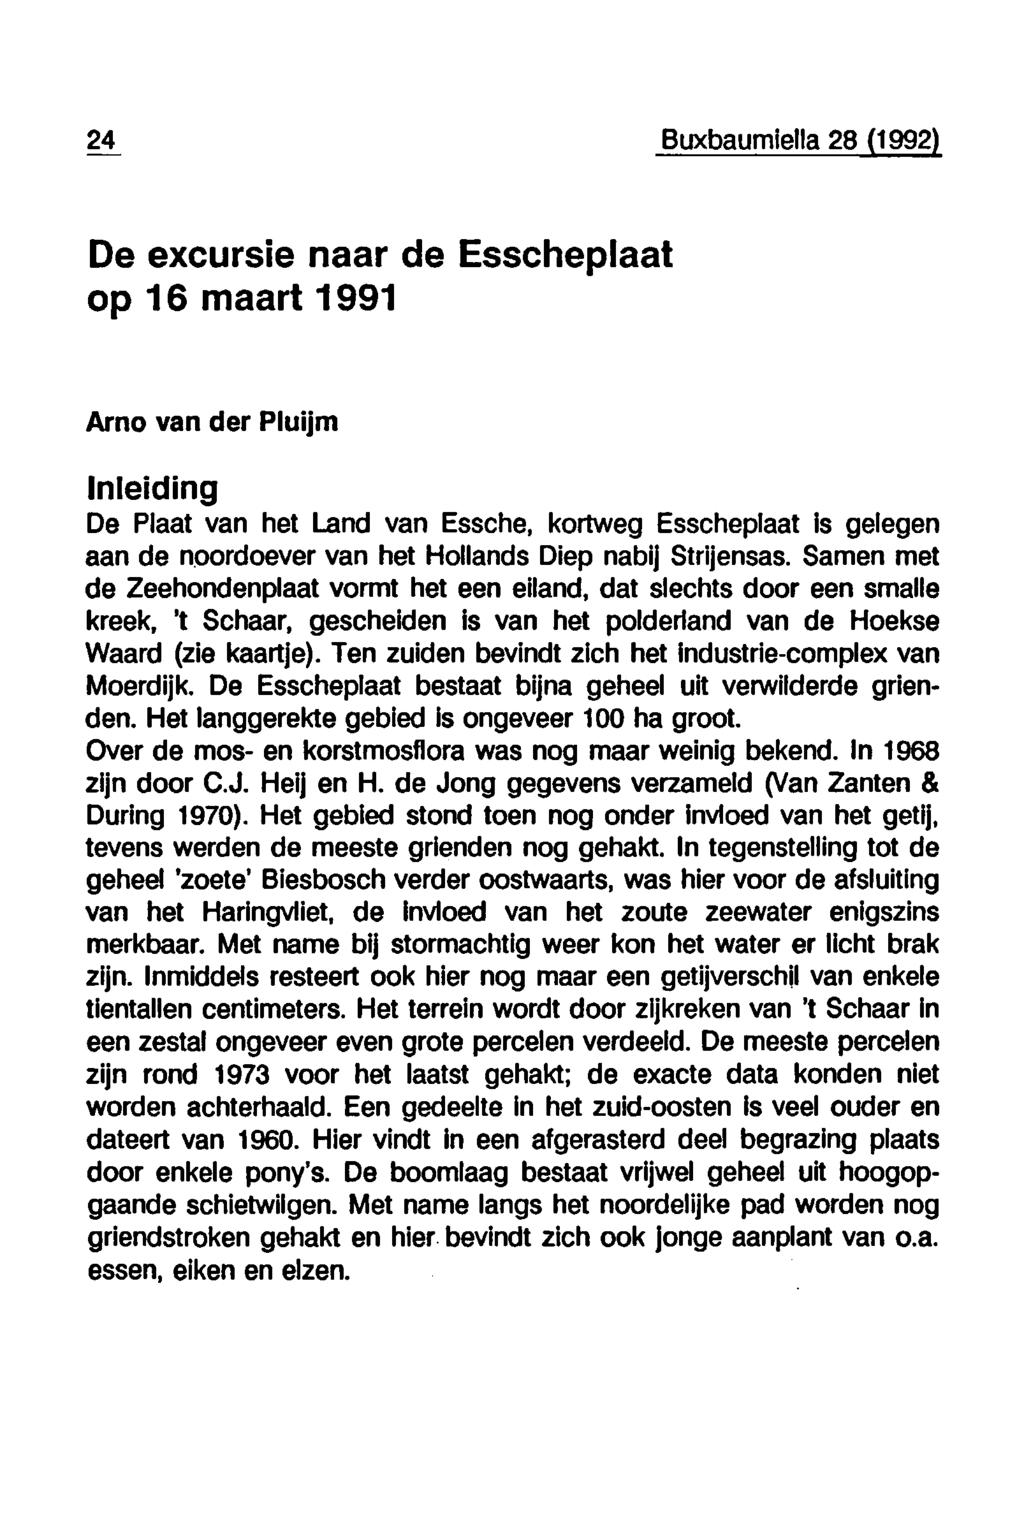 24 Buxbaumiella 28 (1992) De excursie naar de Esscheplaat op 16 maart 1991 Arno van der Pluijm Inleiding De Plaat van het Land van Essche, kortweg Esscheplaat is gelegen aan de noordoever van het